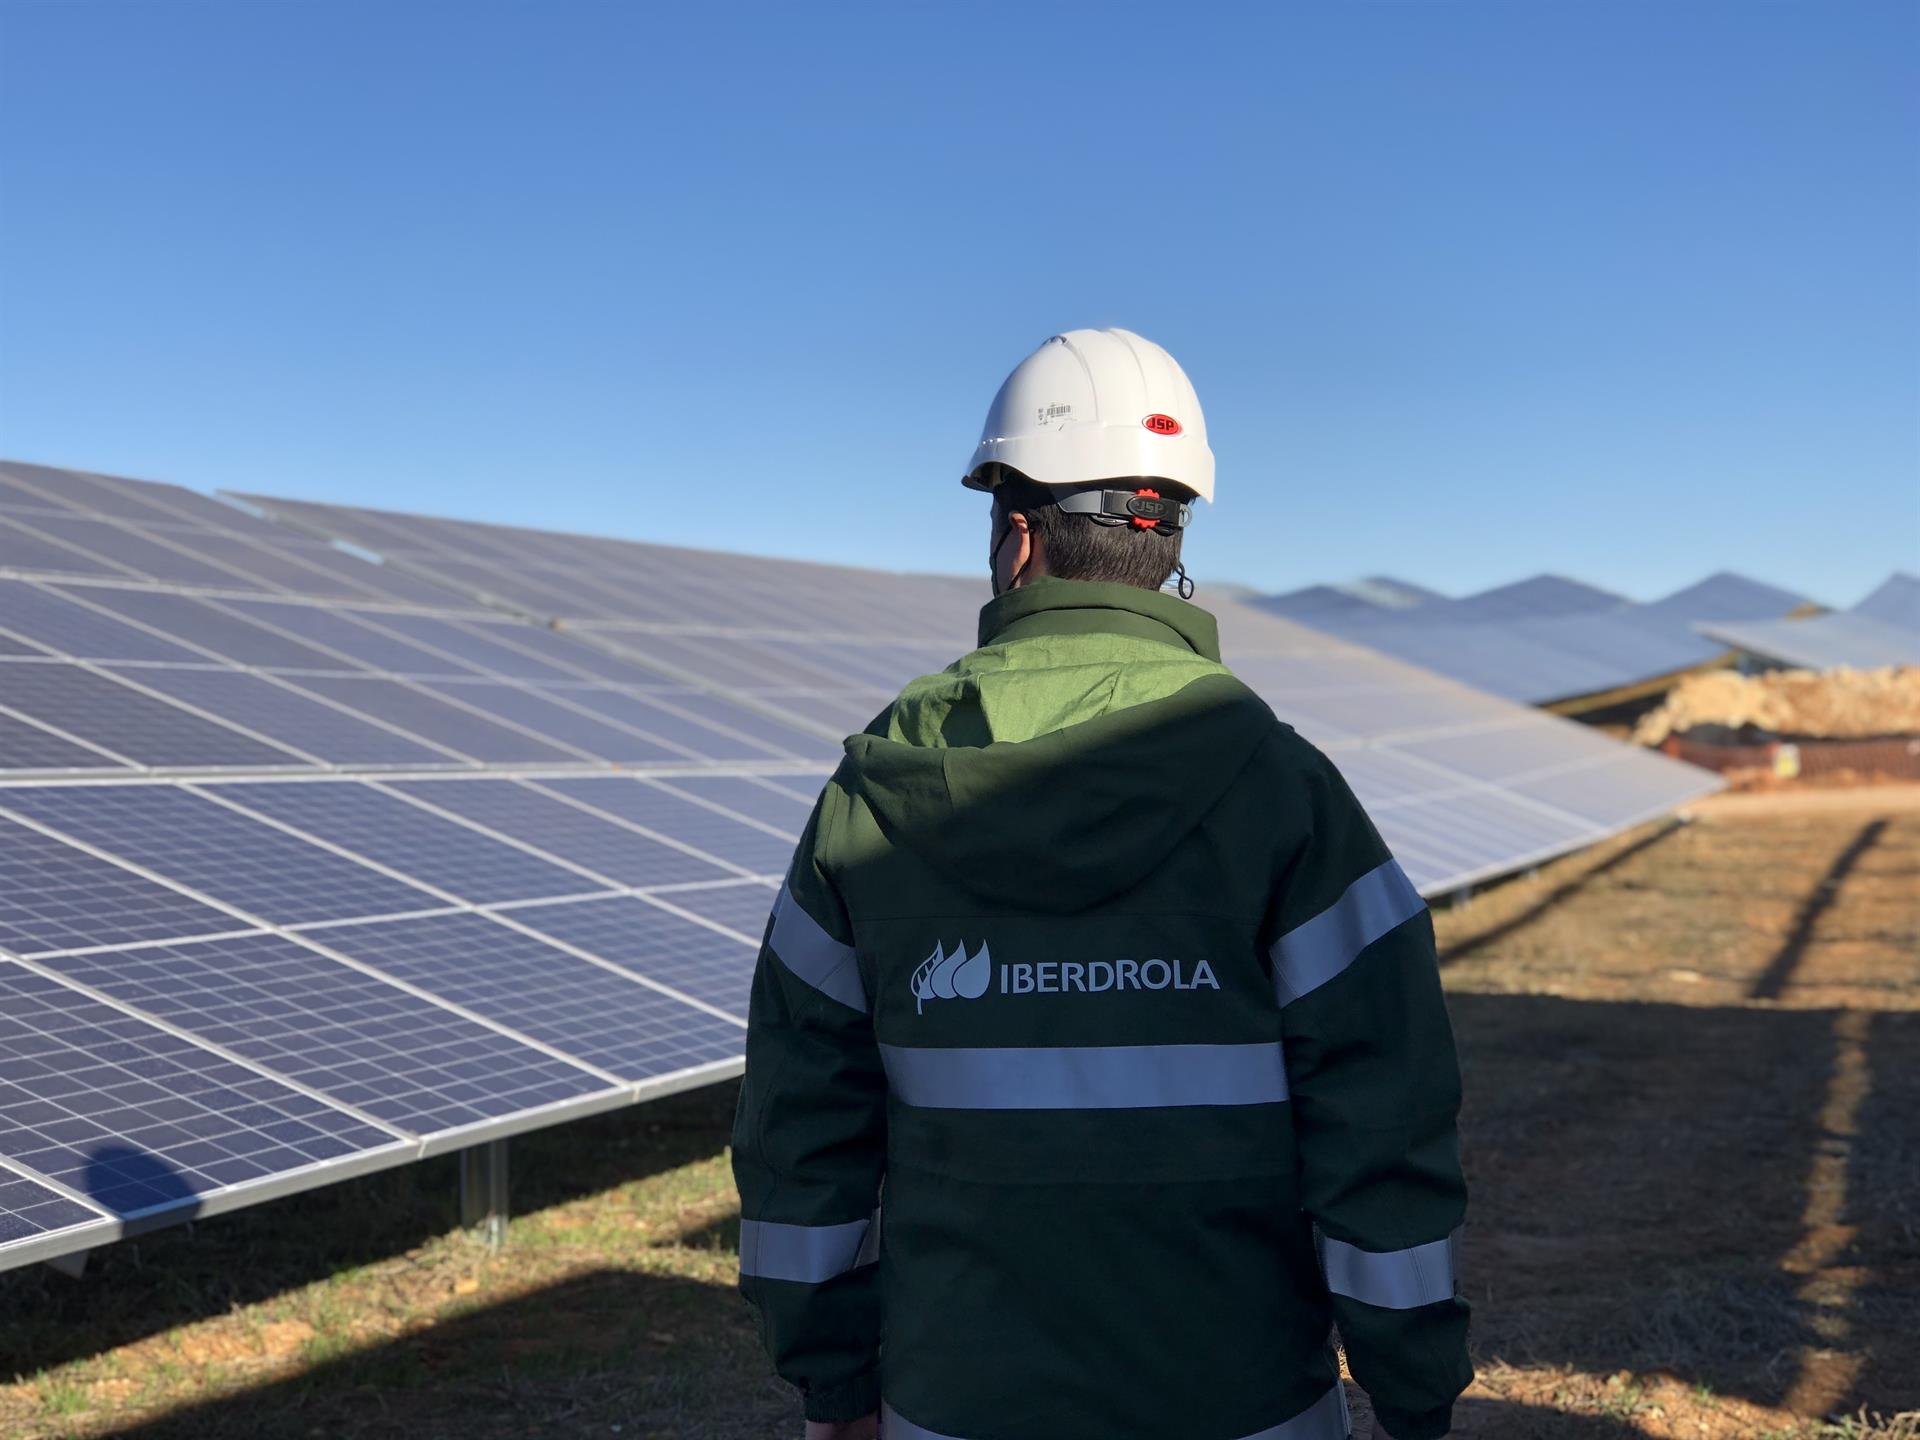 El parque fotovoltaico Olmedilla de Iberdrola, en Cuenca / Foto: EP